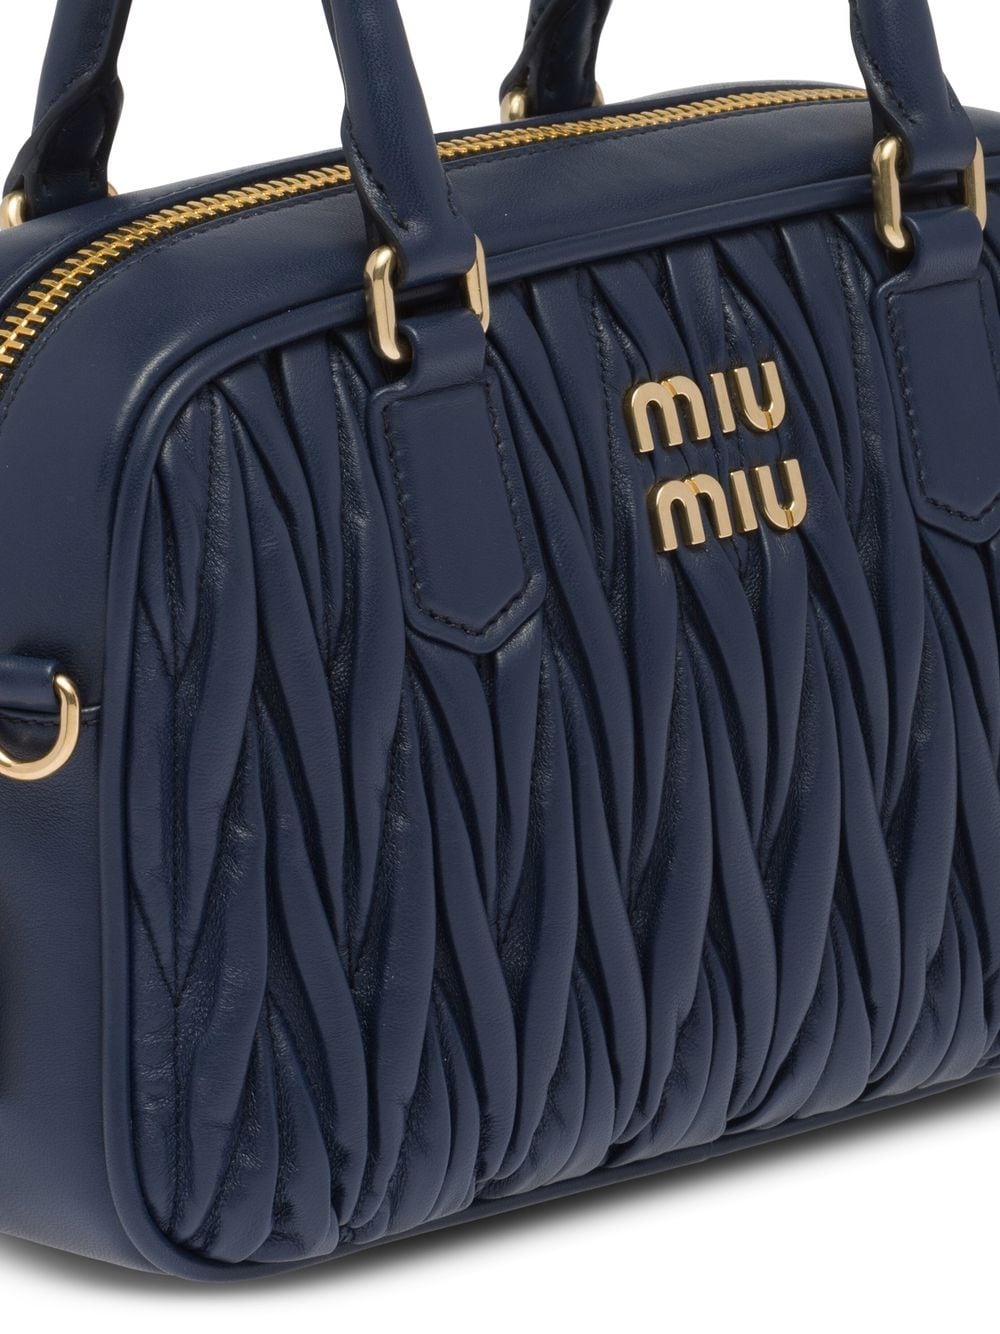 Miu Miu Matelassé Leather Tote Bag - Farfetch